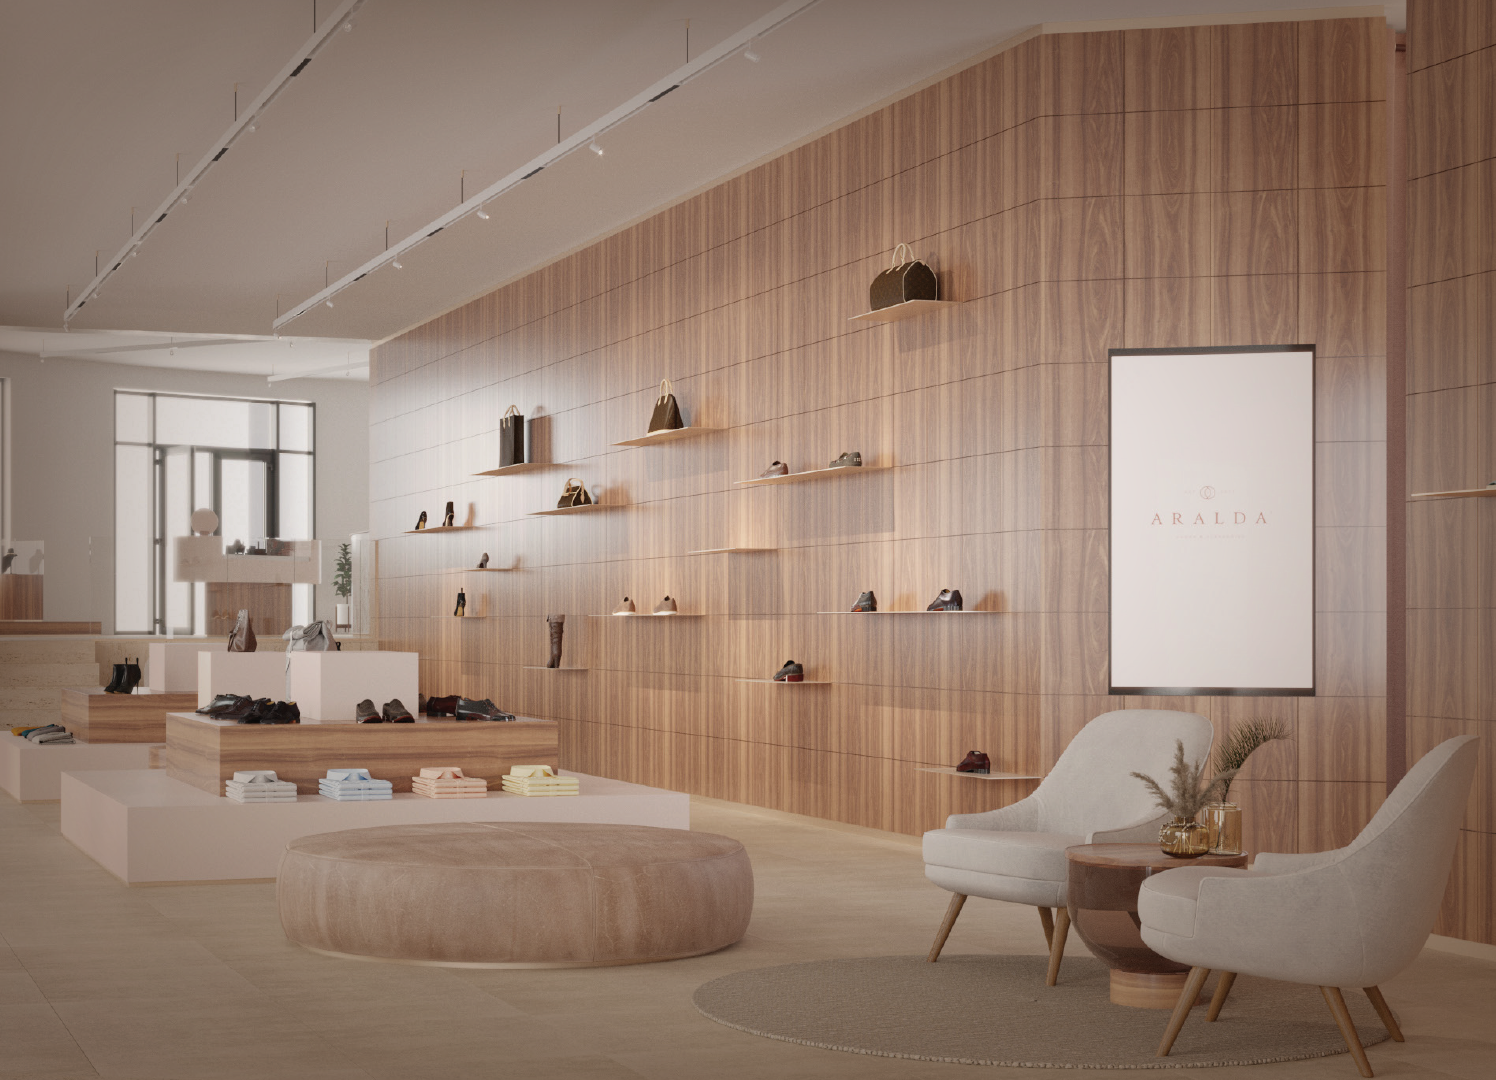 Aralda Concept Store 1